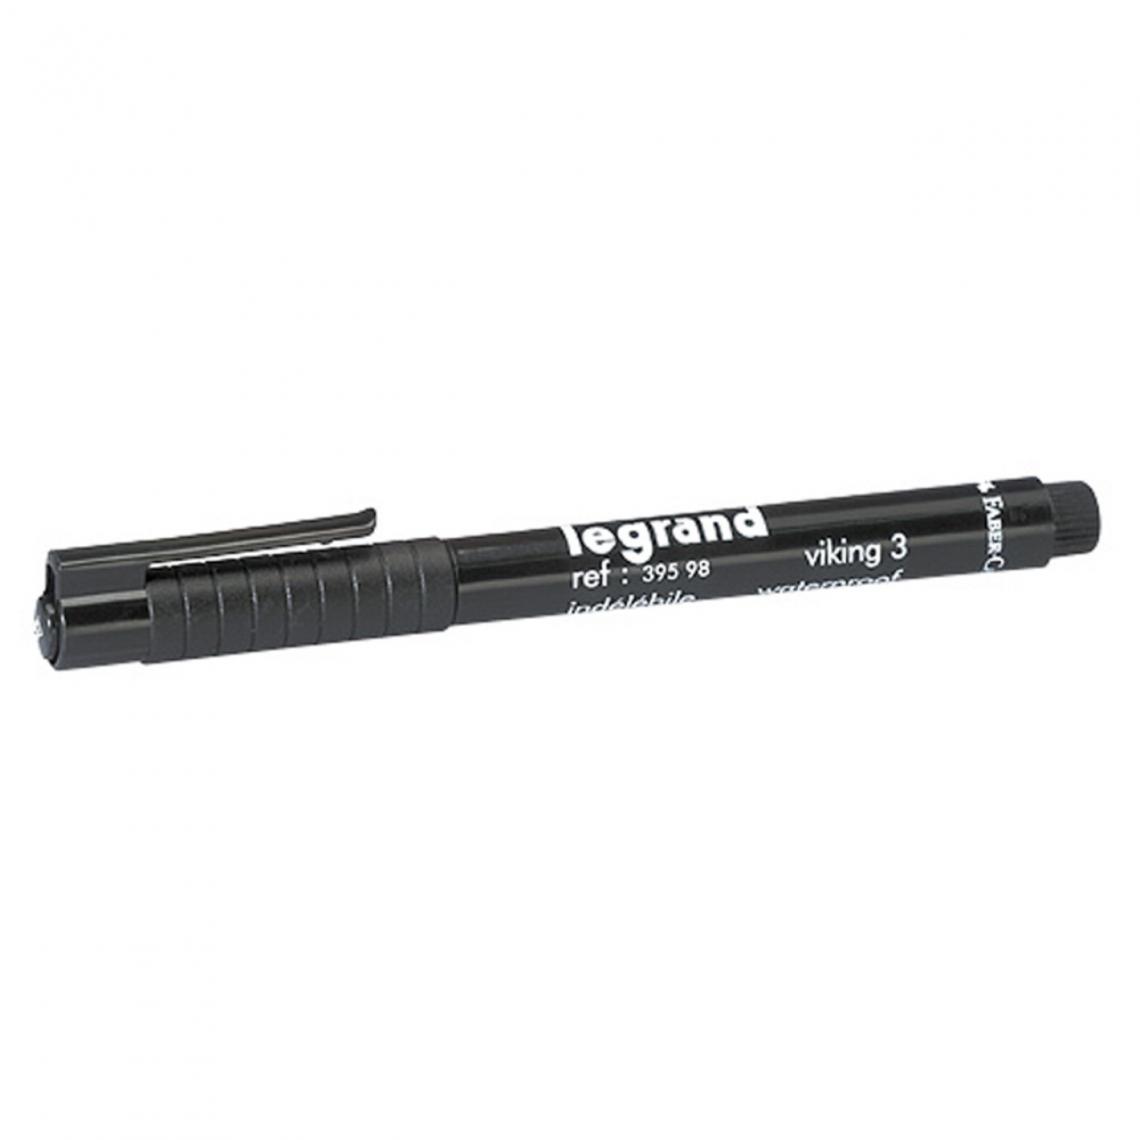 Legrand - stylo marqueur noir indélébile legrand 39598 - Accessoires de câblage